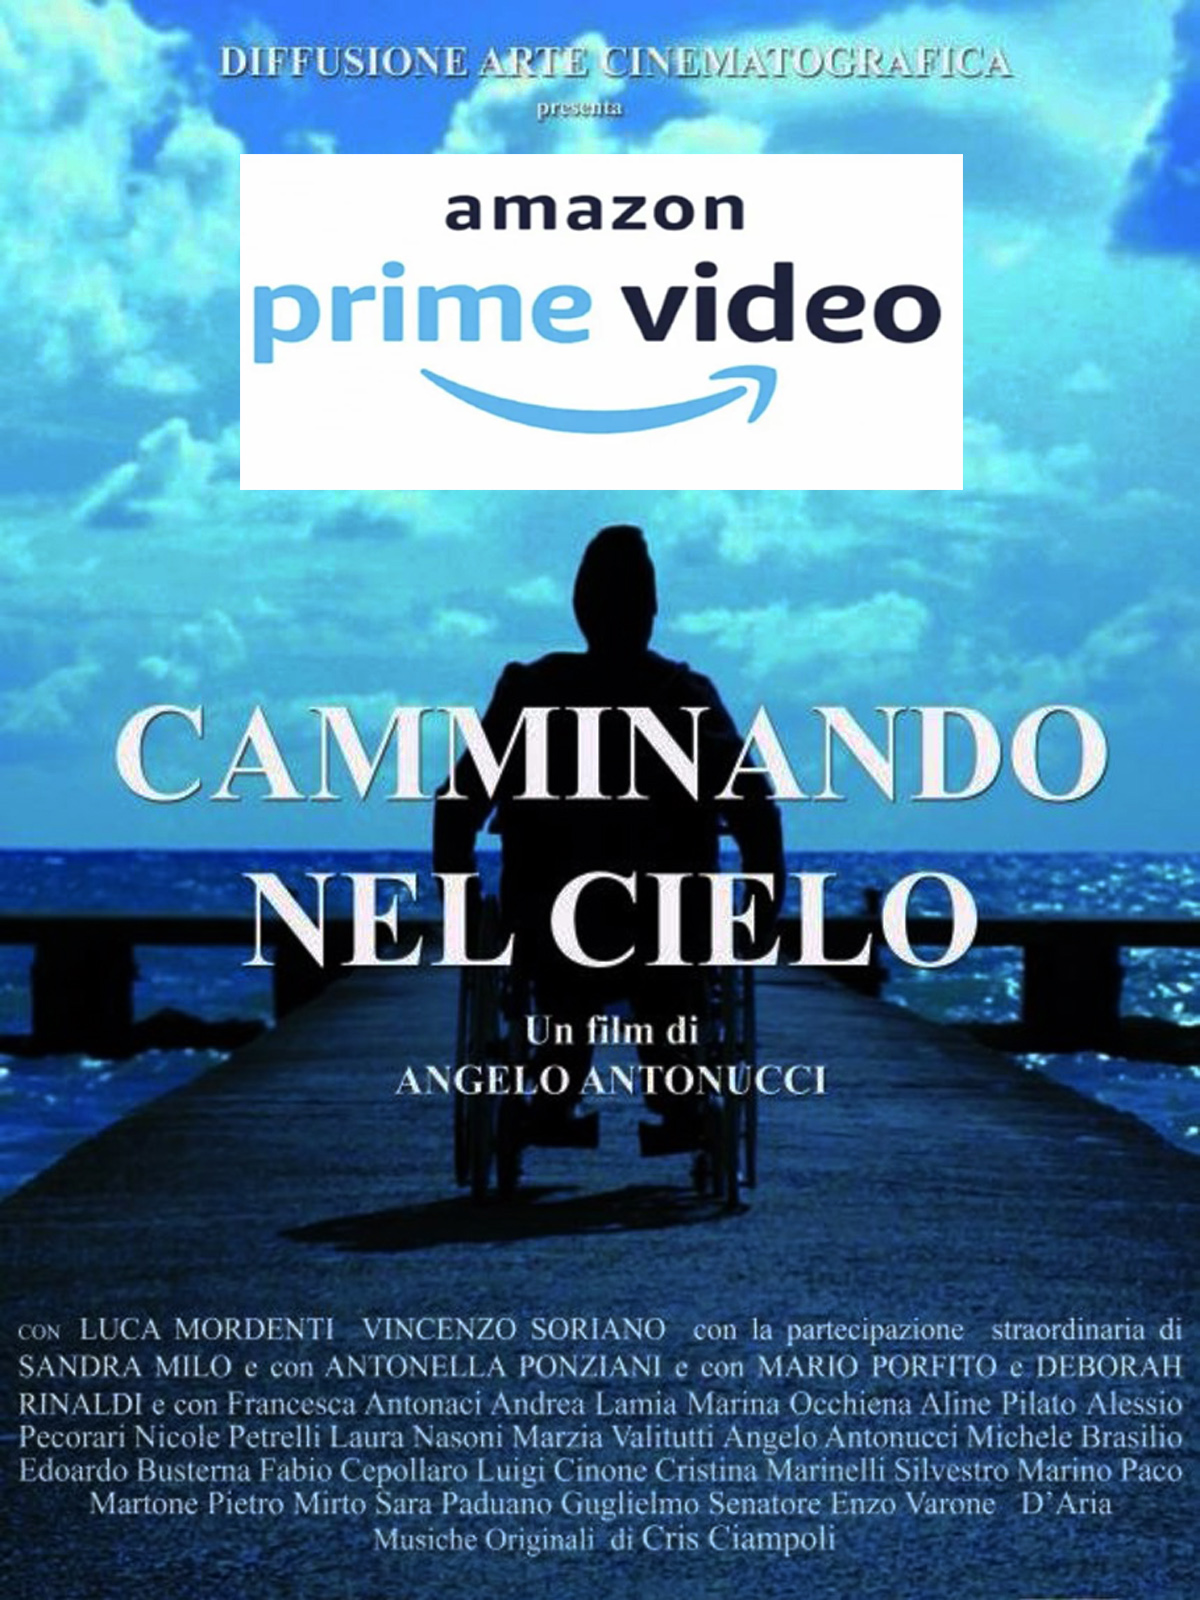 CAMMINANDO NEL CIELO SU AMAZON PRIME VIDEO